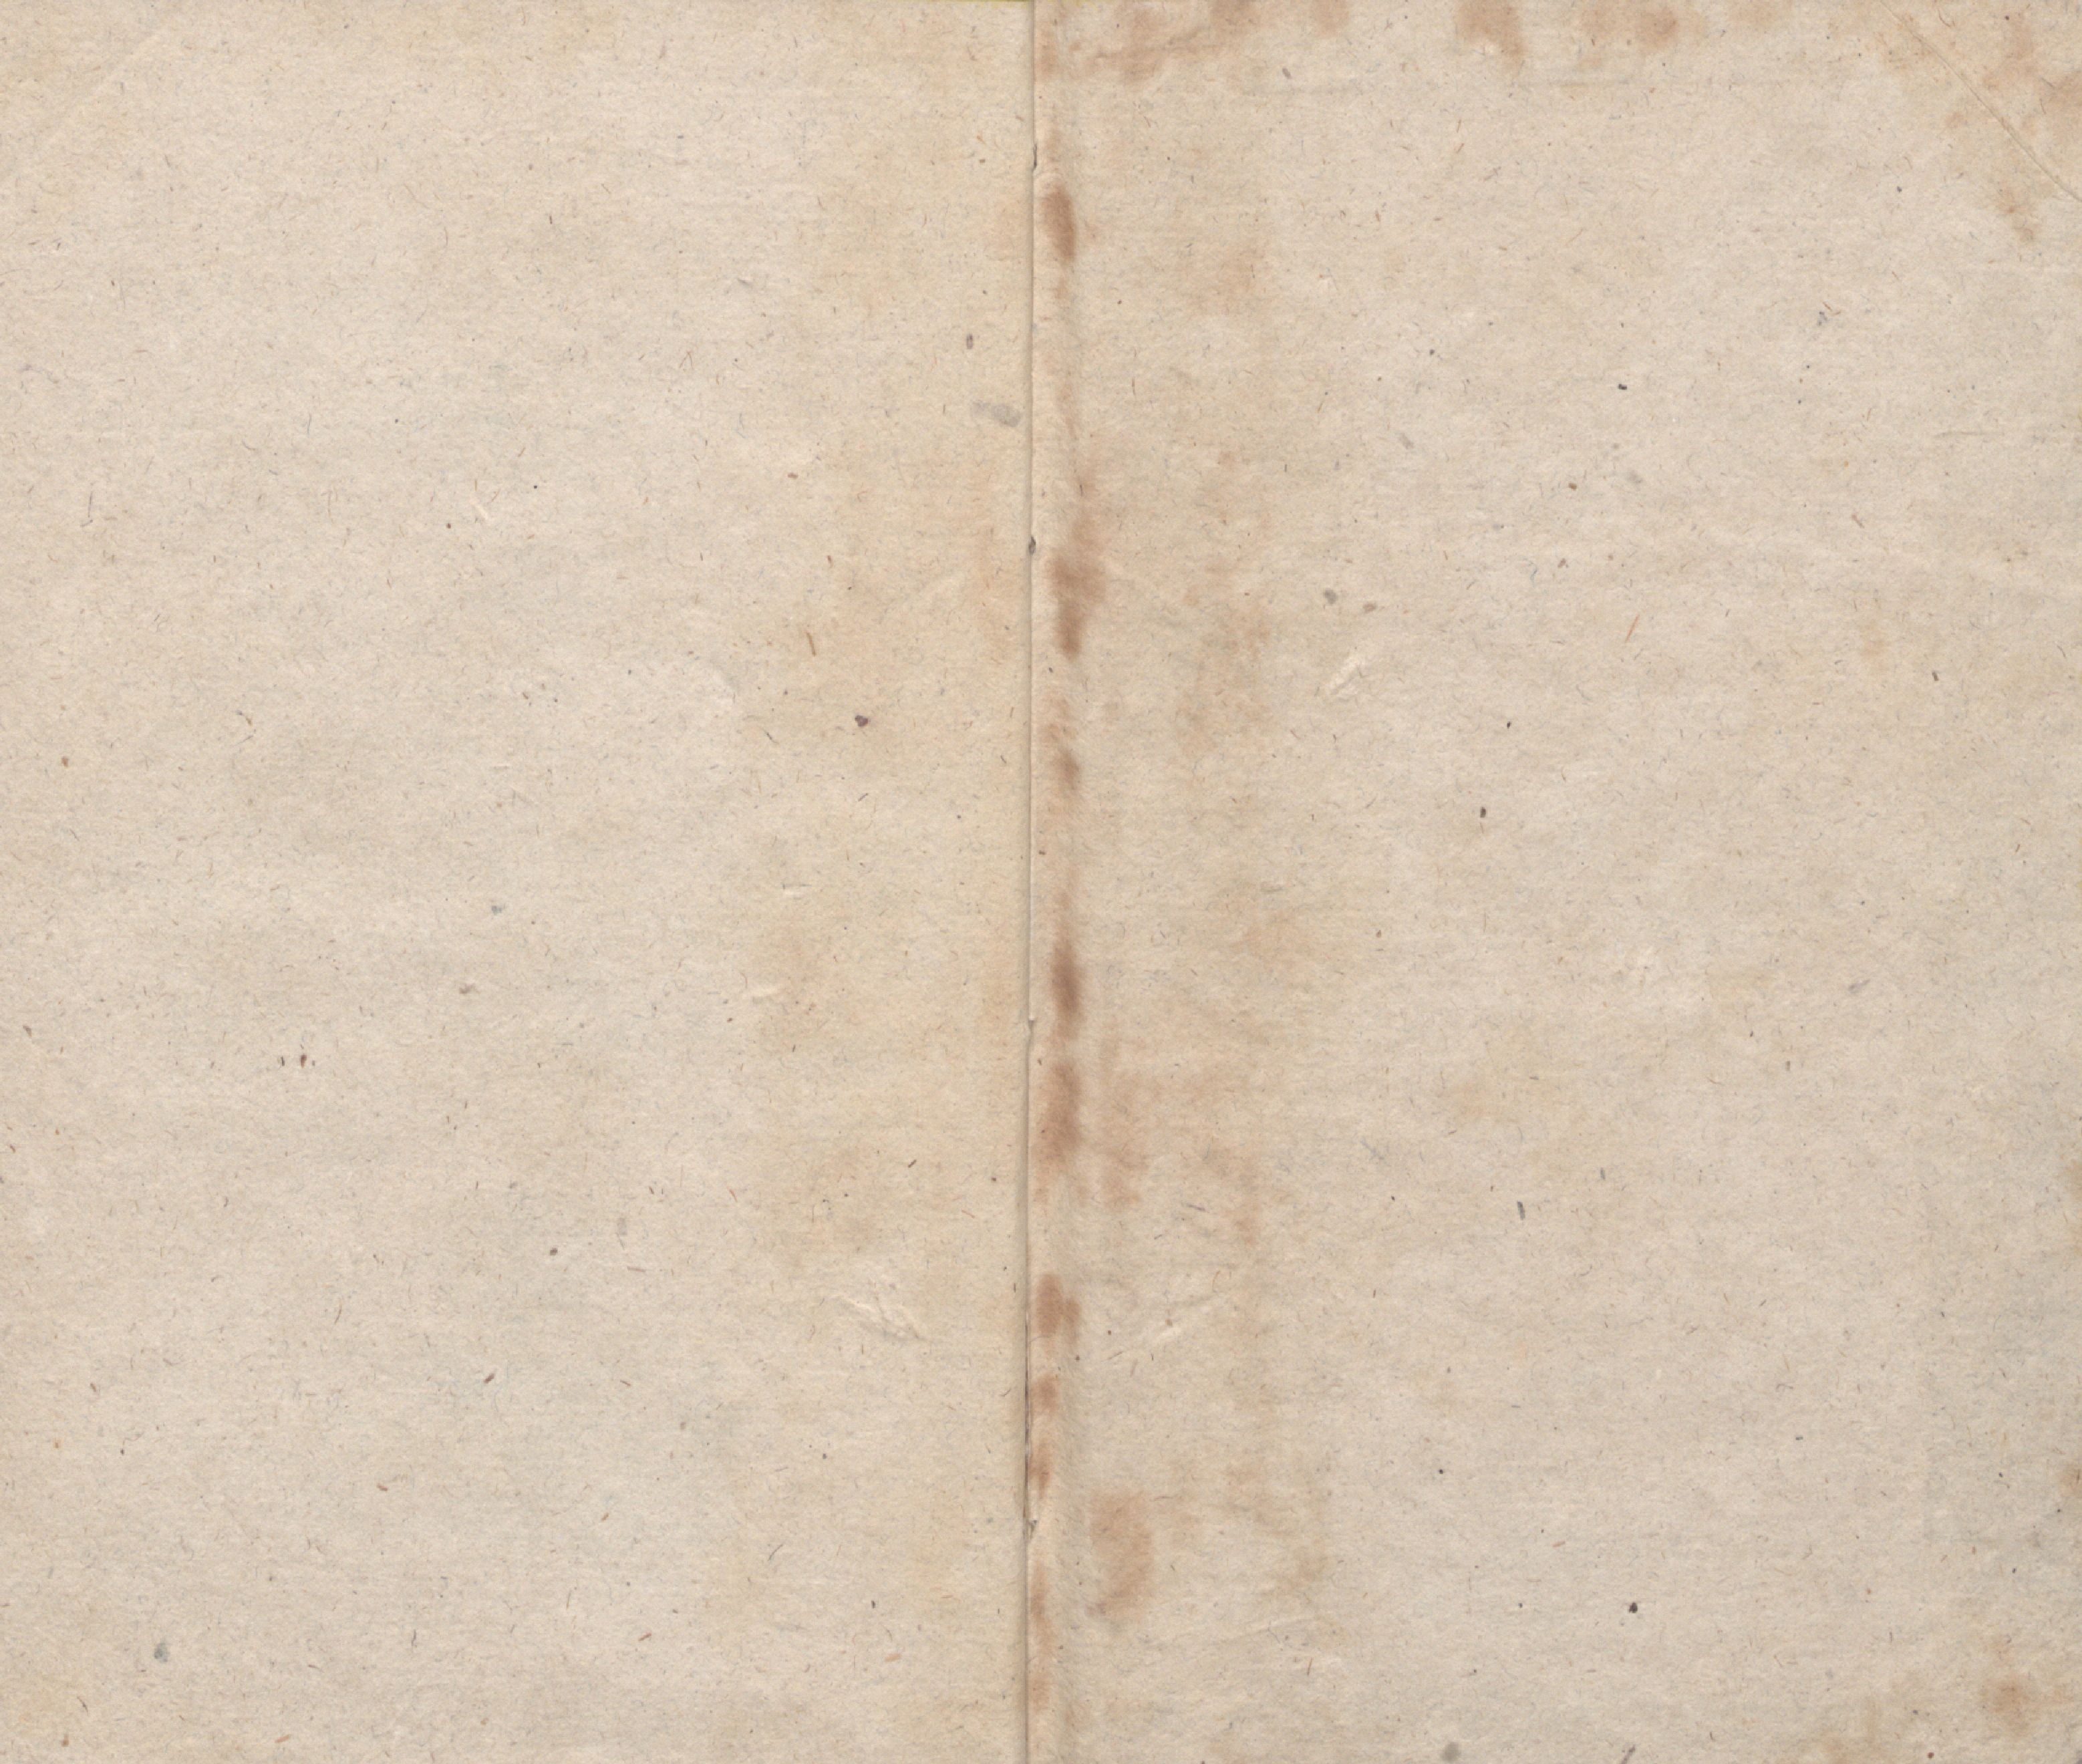 Lillikessed [1] (1814) | 12. Back flyleaf